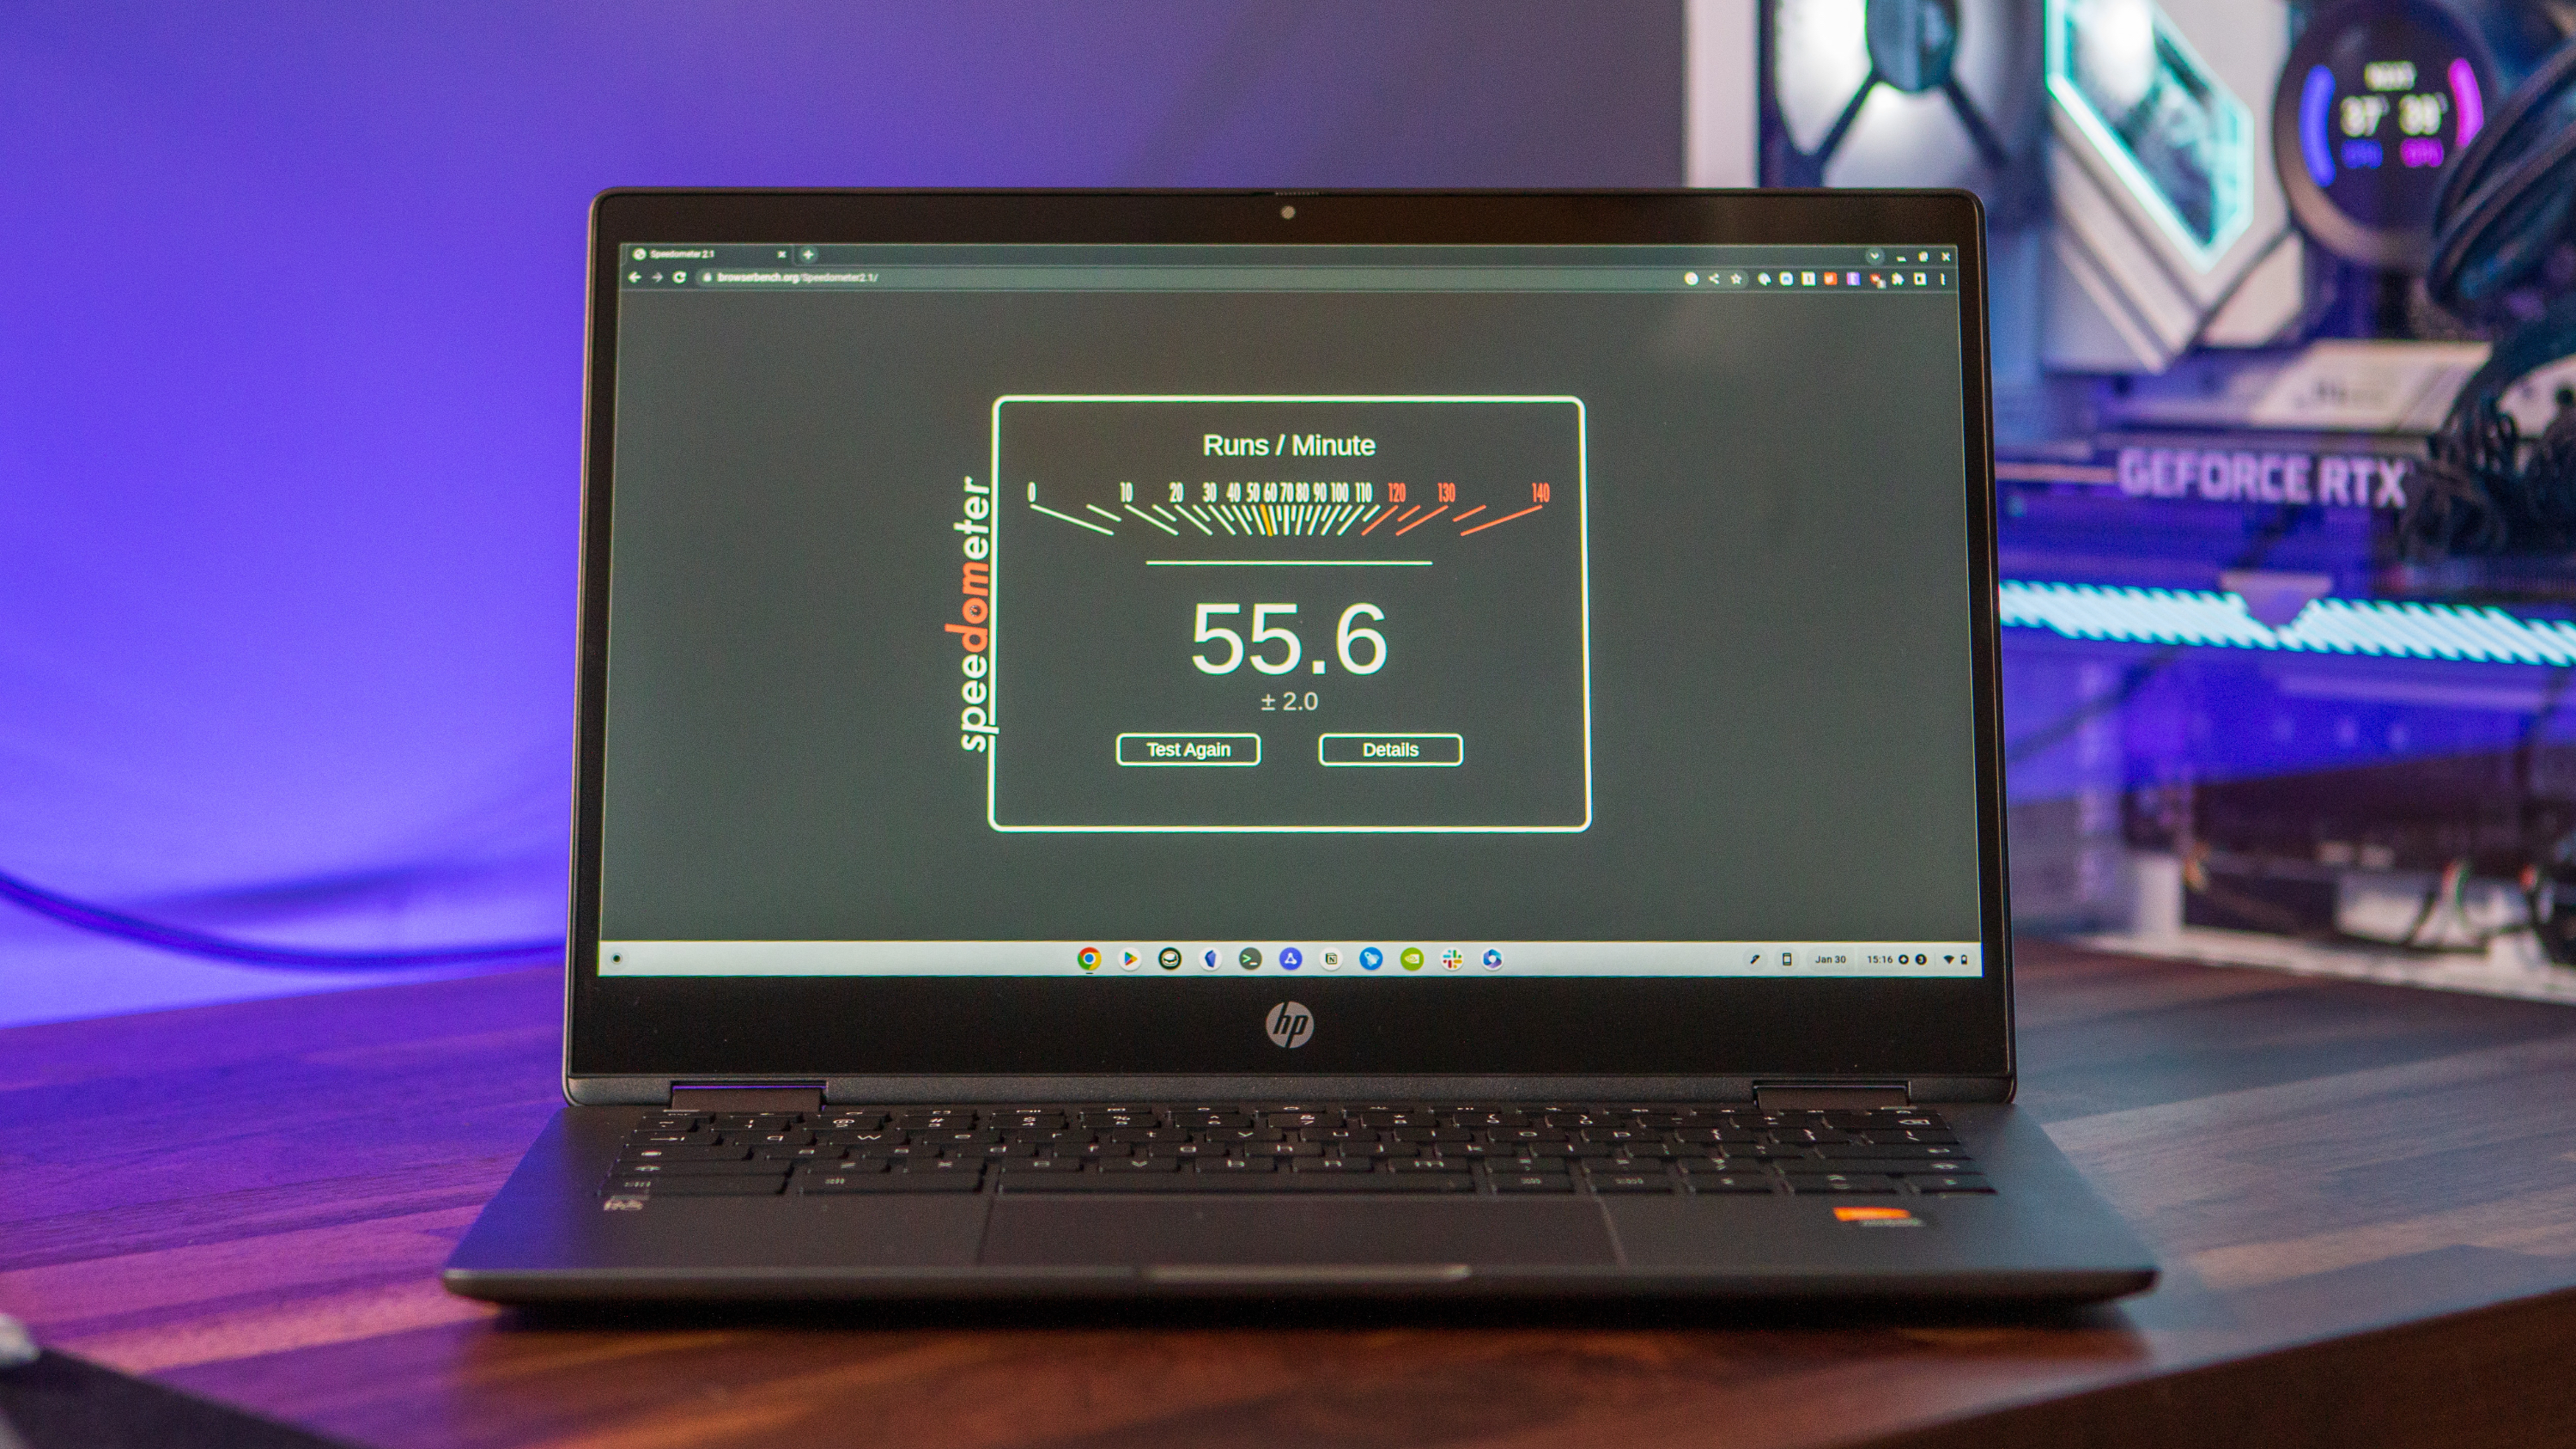 HP Chromebook x360 13b running Speedometer benchmark